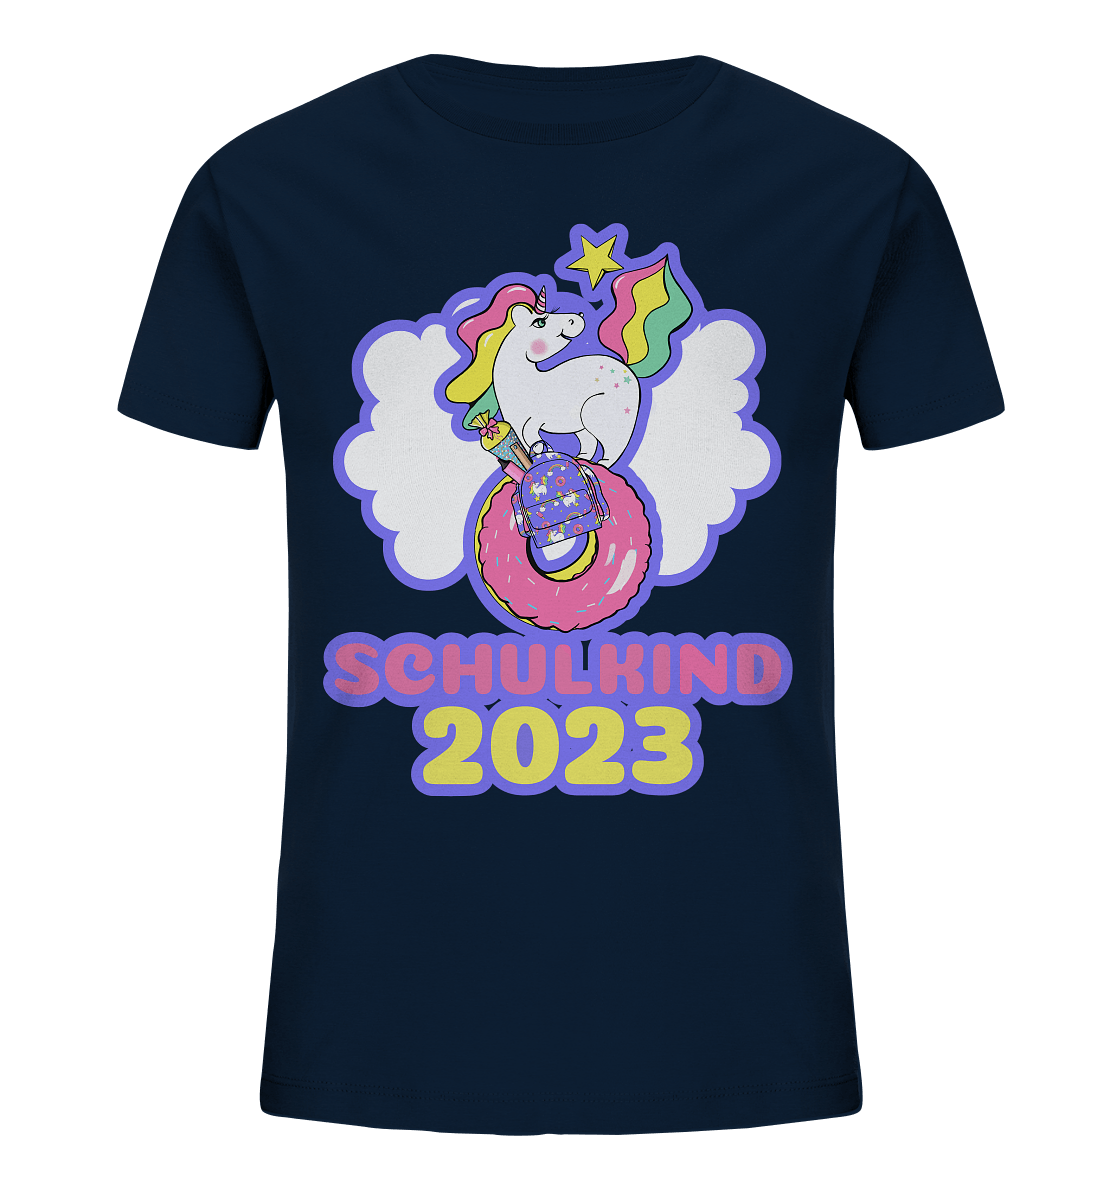 Schulkind-Shirt-2023-Einhorn-navy